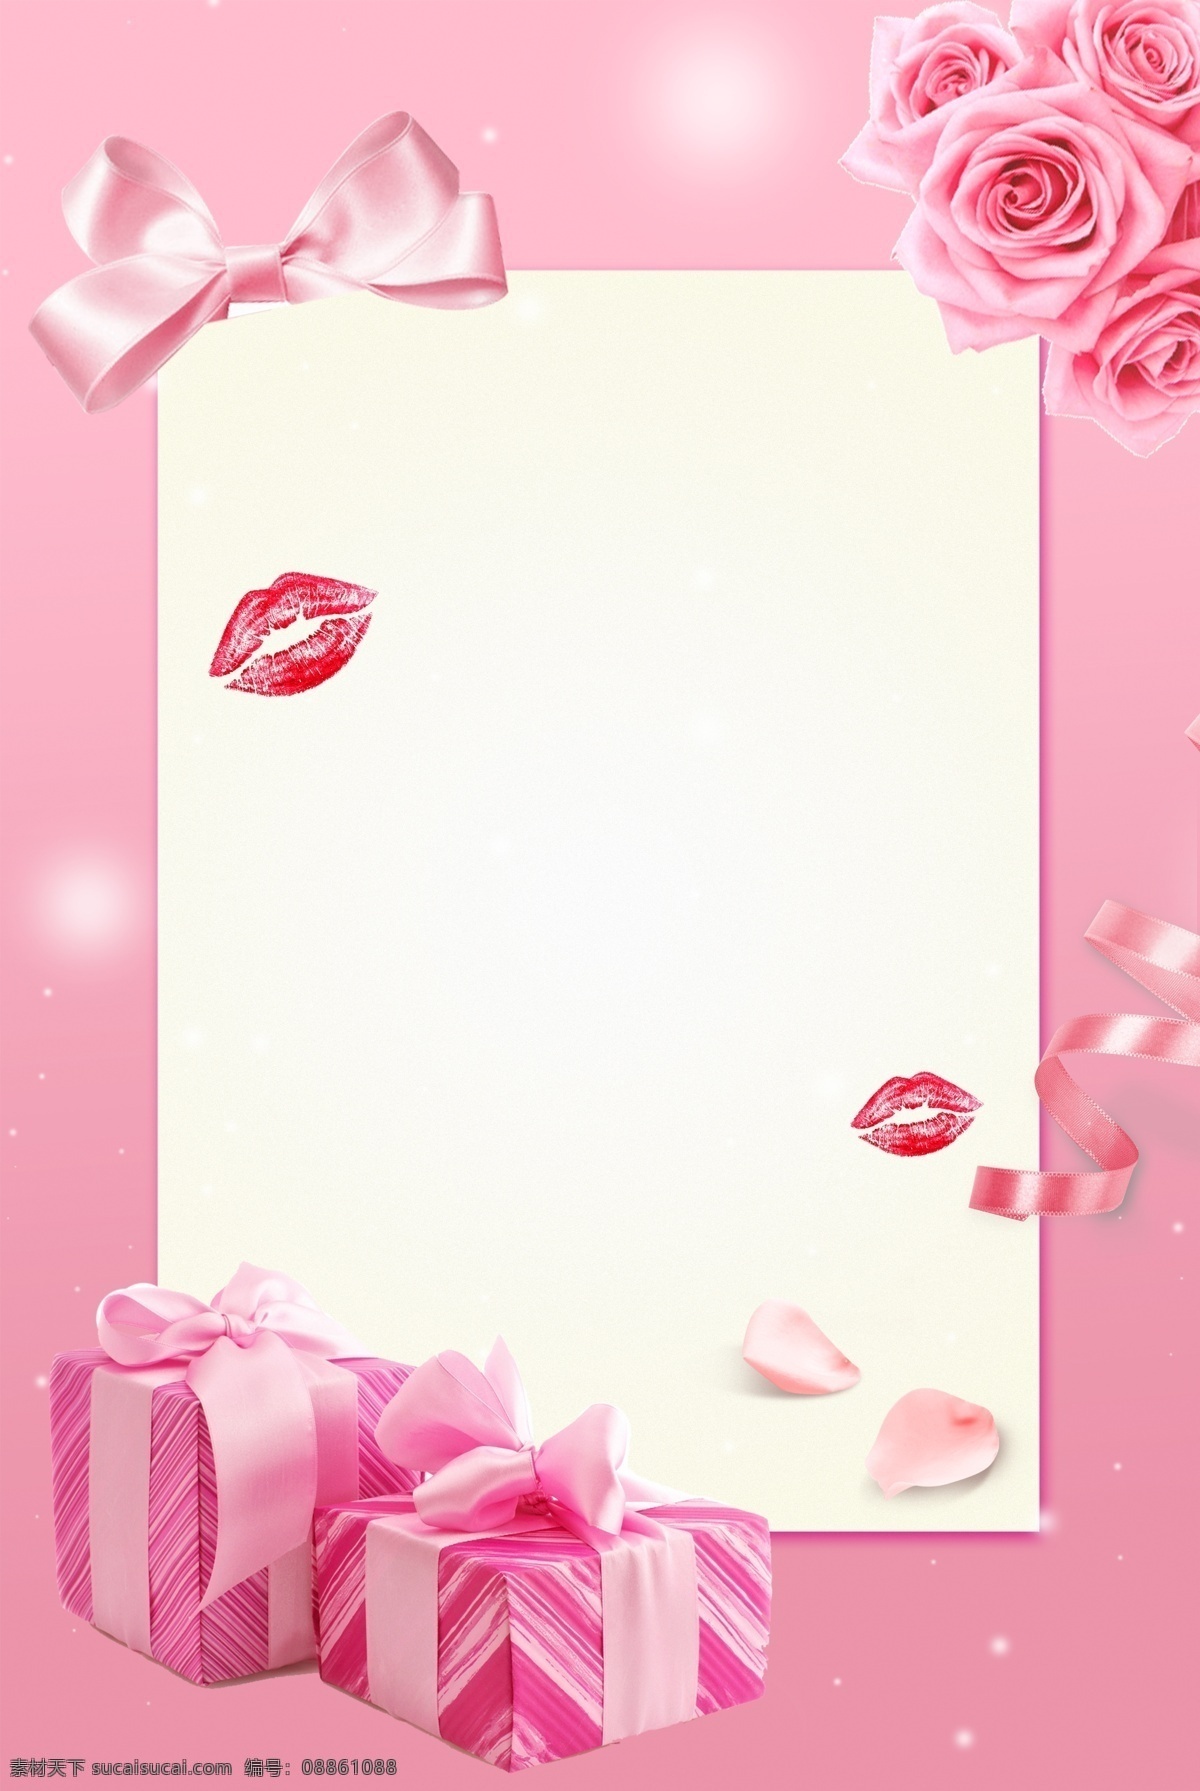 情人节 粉色 玫瑰花 礼物 海报 文艺 温馨 浪漫 粉丝带 吻痕 蝴蝶机 花瓣